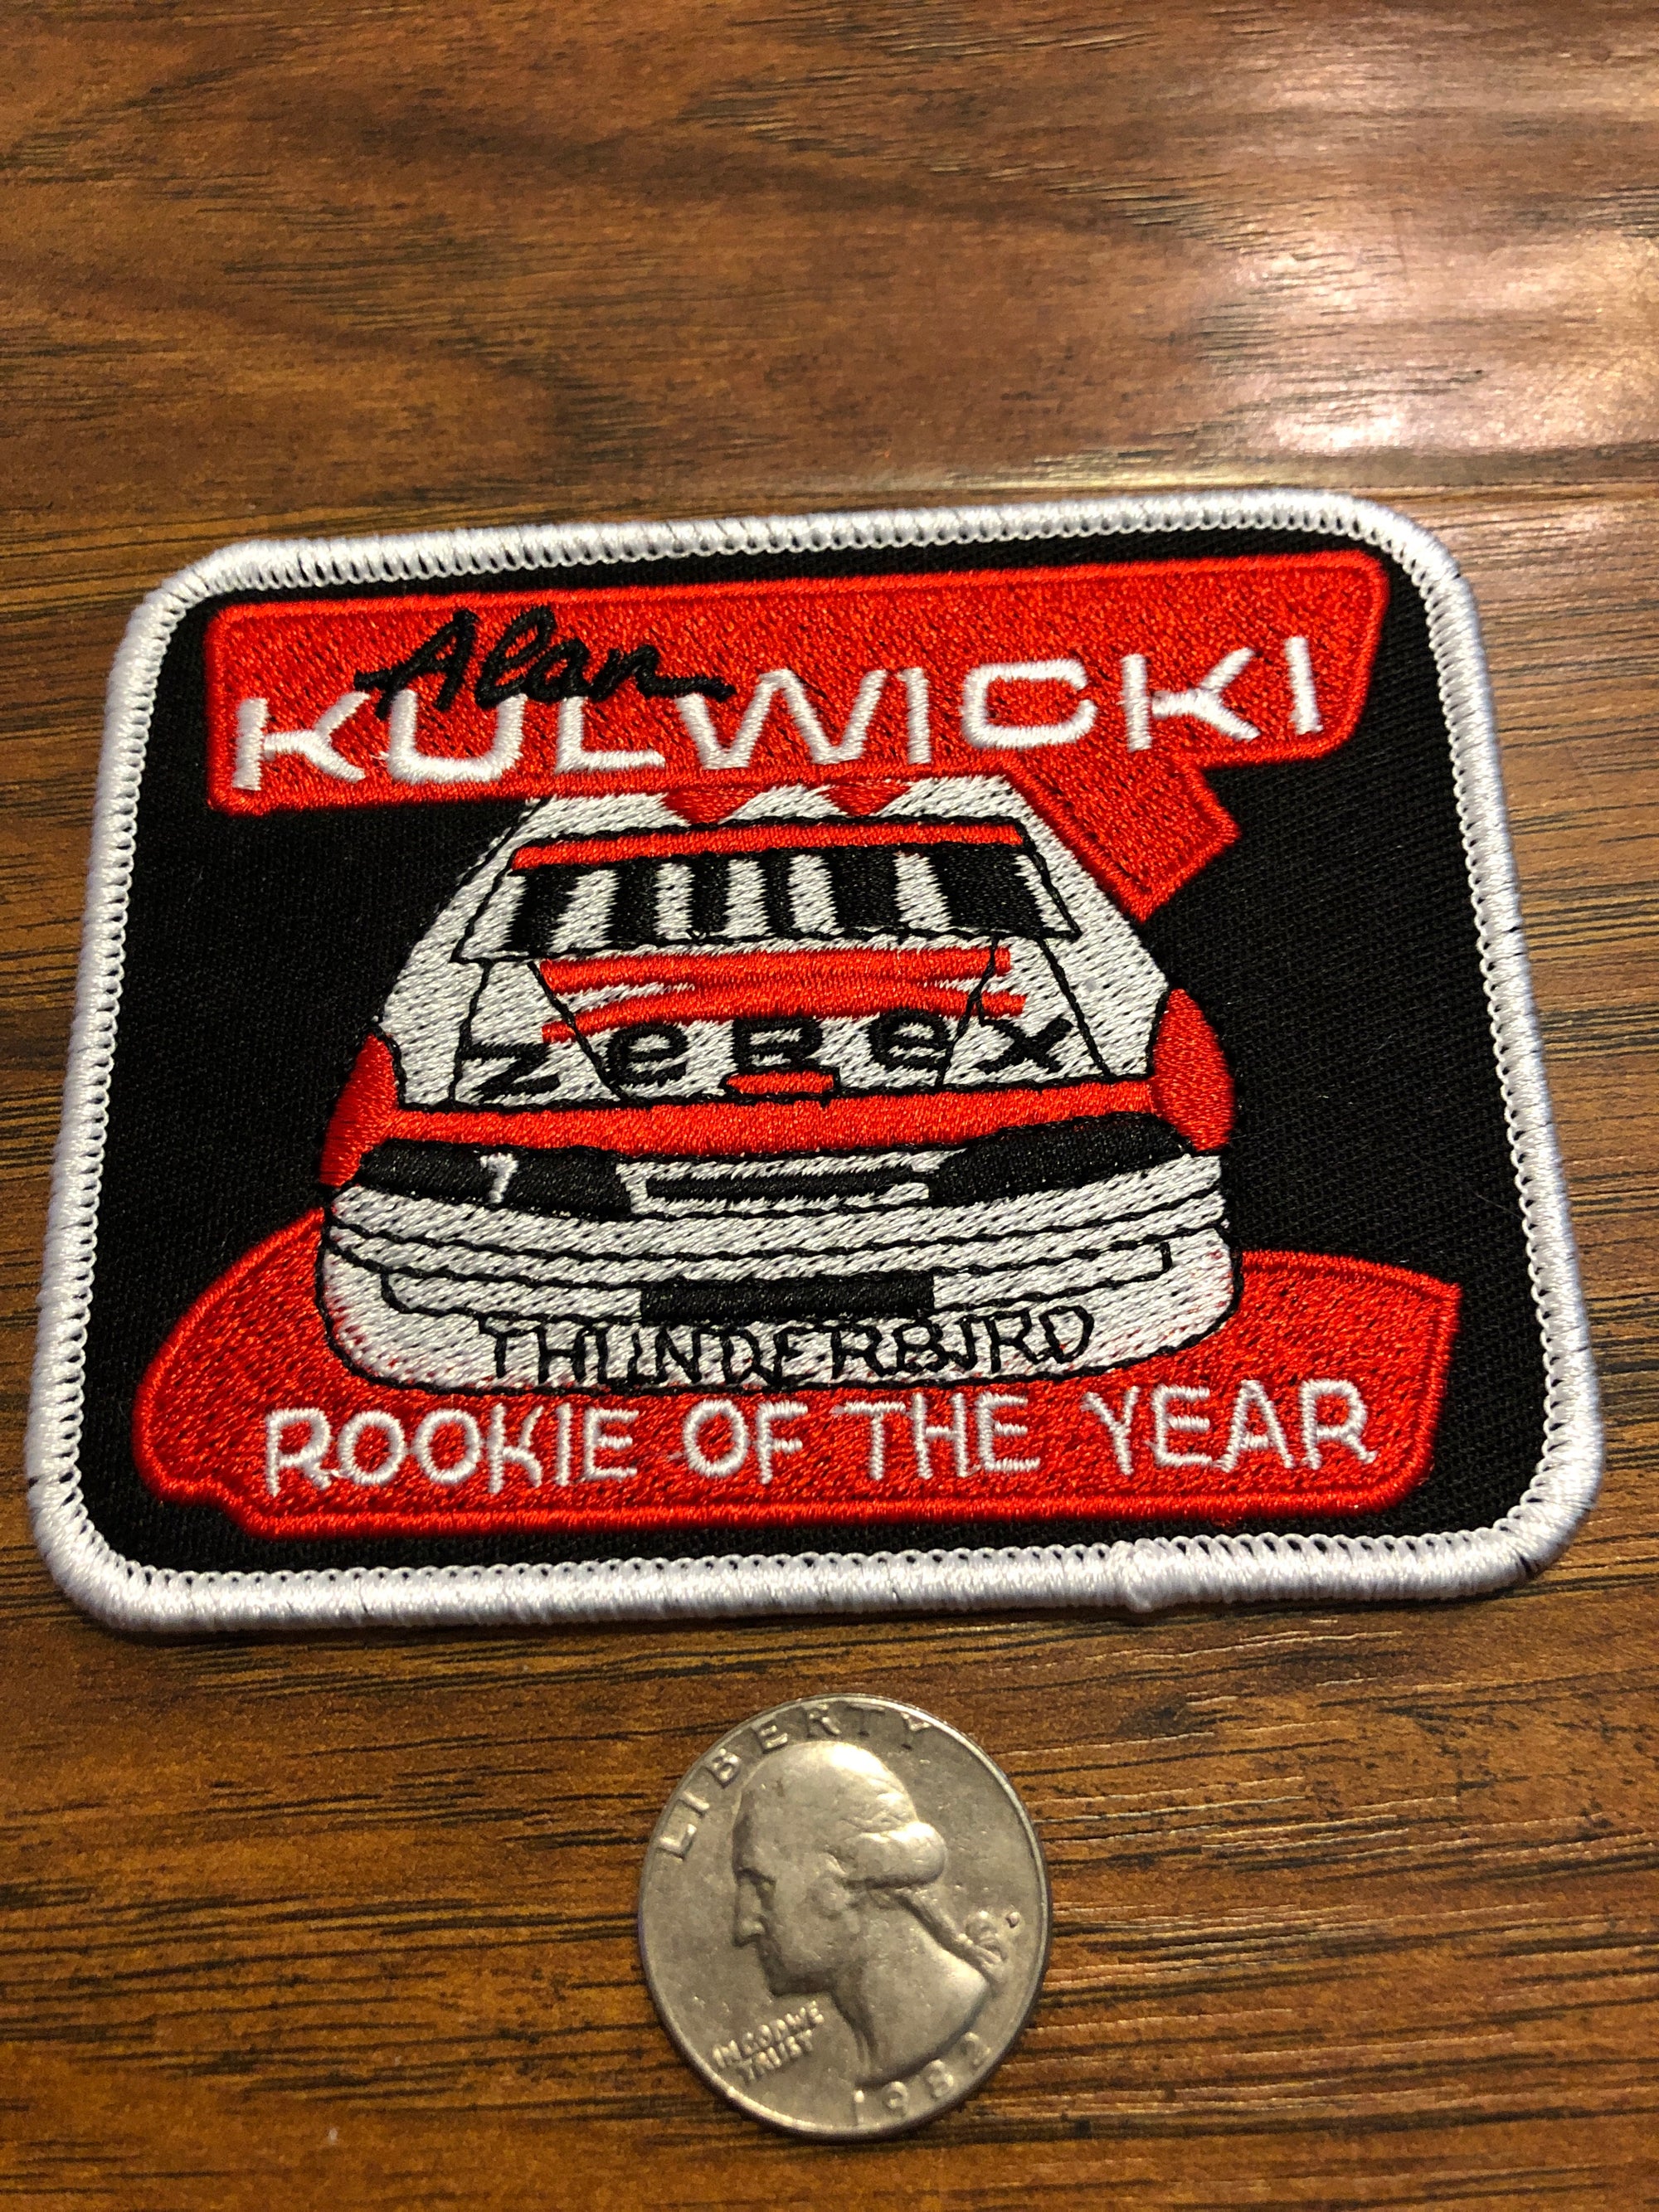 Alan Kulwicki Rookie of the year